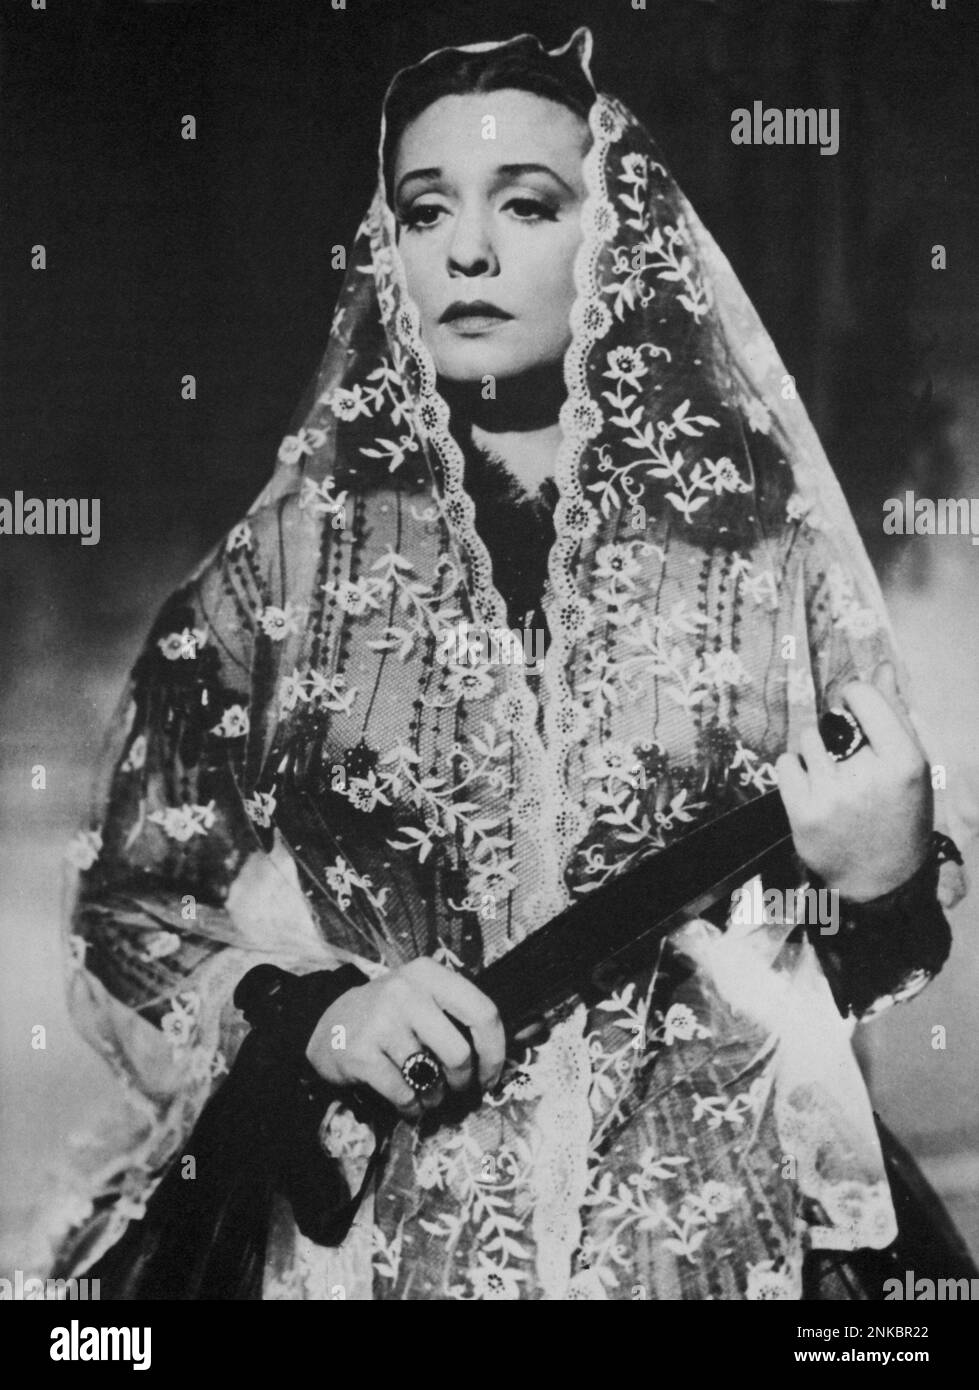 1937 : The Nazi Diva german singer and movie actress ZARAH LEANDER ( born Zarah Stina Hedberg , Karlstad , Sweden 15 mars 1907 - Stockholm , Sweden 23 june 1981 ) in HABANERA ( La Habanera ) by Detlef Sierk ( alias Douglas Sirk ) - MOVIE - CINEMA - CANTANTE - NAZIST - NAZISMO - WWII - SECONDA GUERRA MONDIALE - portrait - ritratto  - mantiglia - pizzo - lace - velo - veil - ventaglio - fan - DIVA - DIVINA - anello - anelli - rings - jewels - gioiello - gioielli ----  Archivio GBB Stock Photo